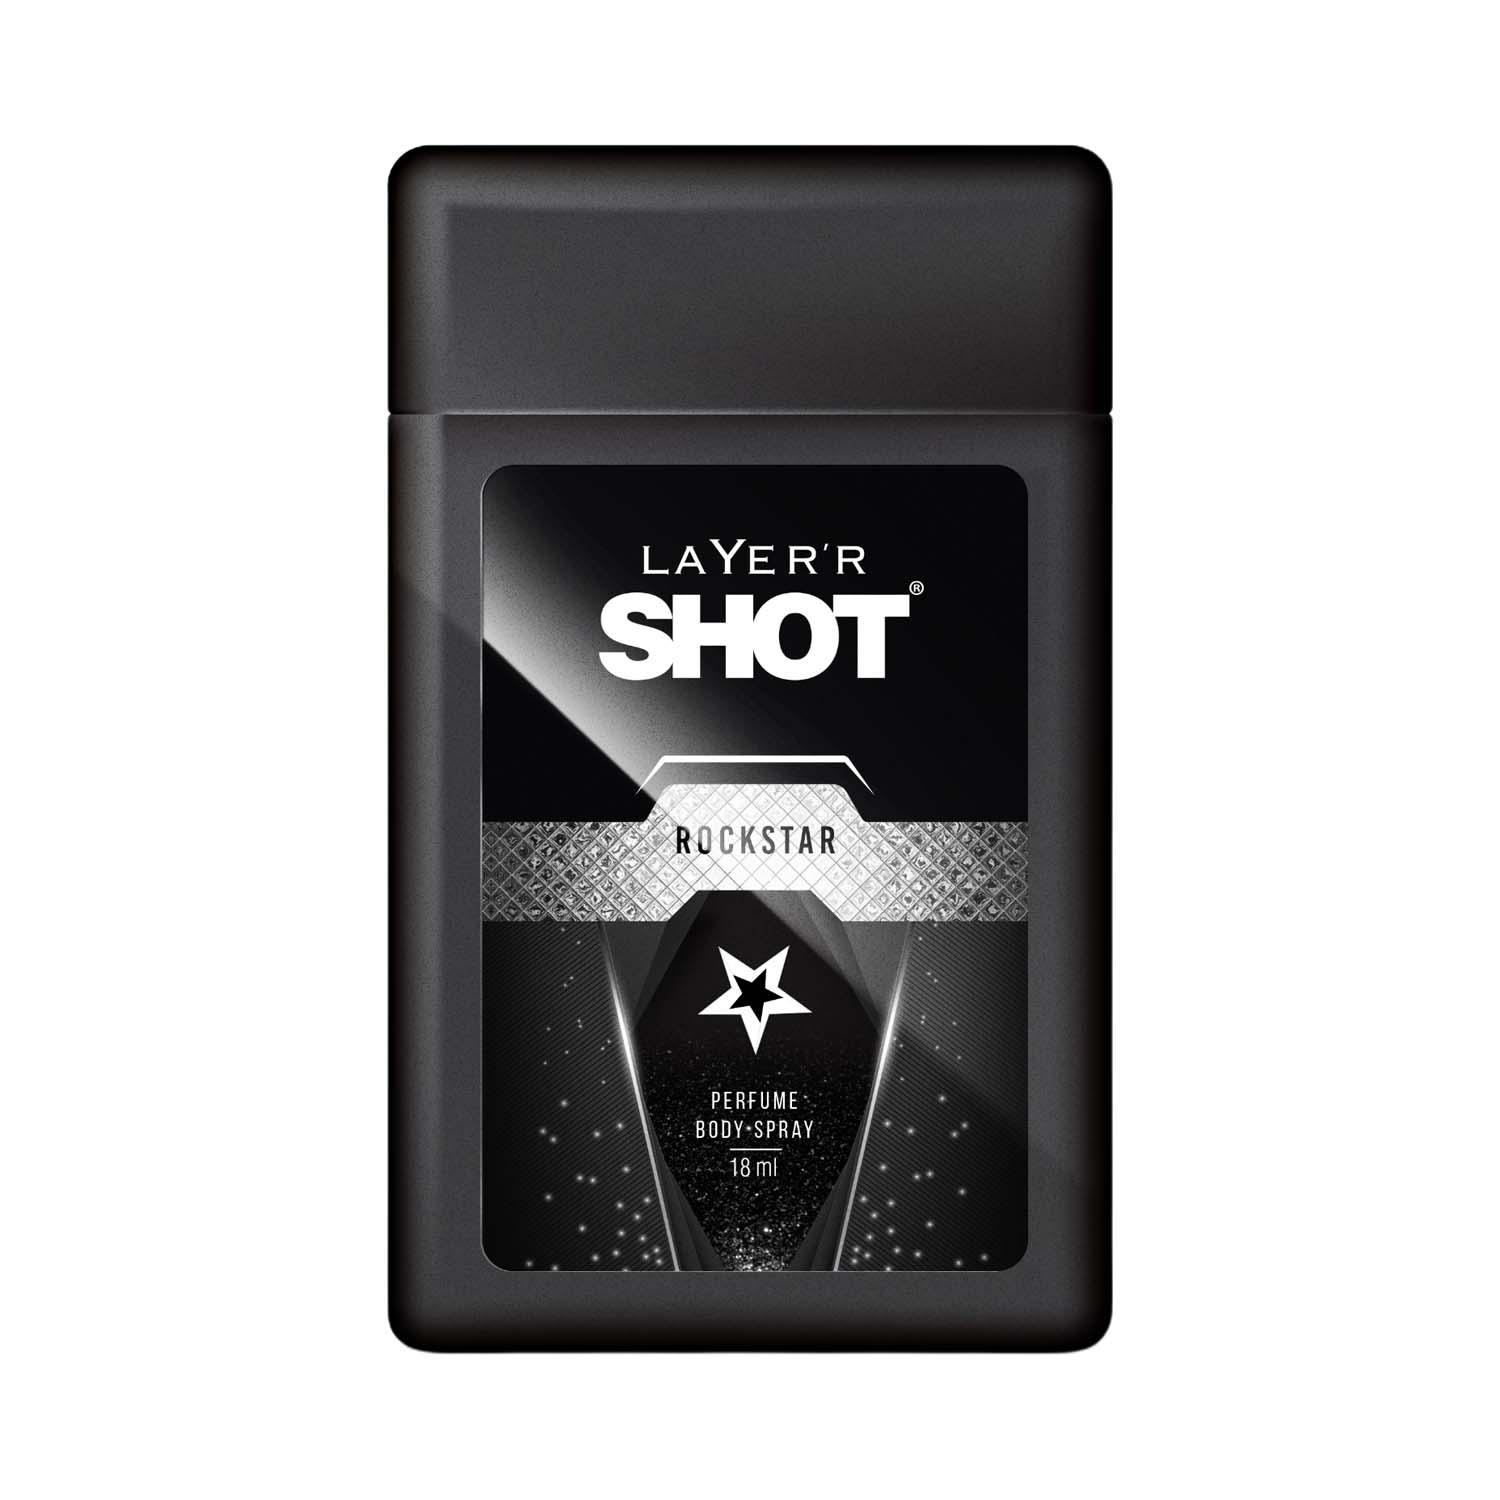 Layer'r | Layer'r Shot Rockstar Men's Parfum (18ml)